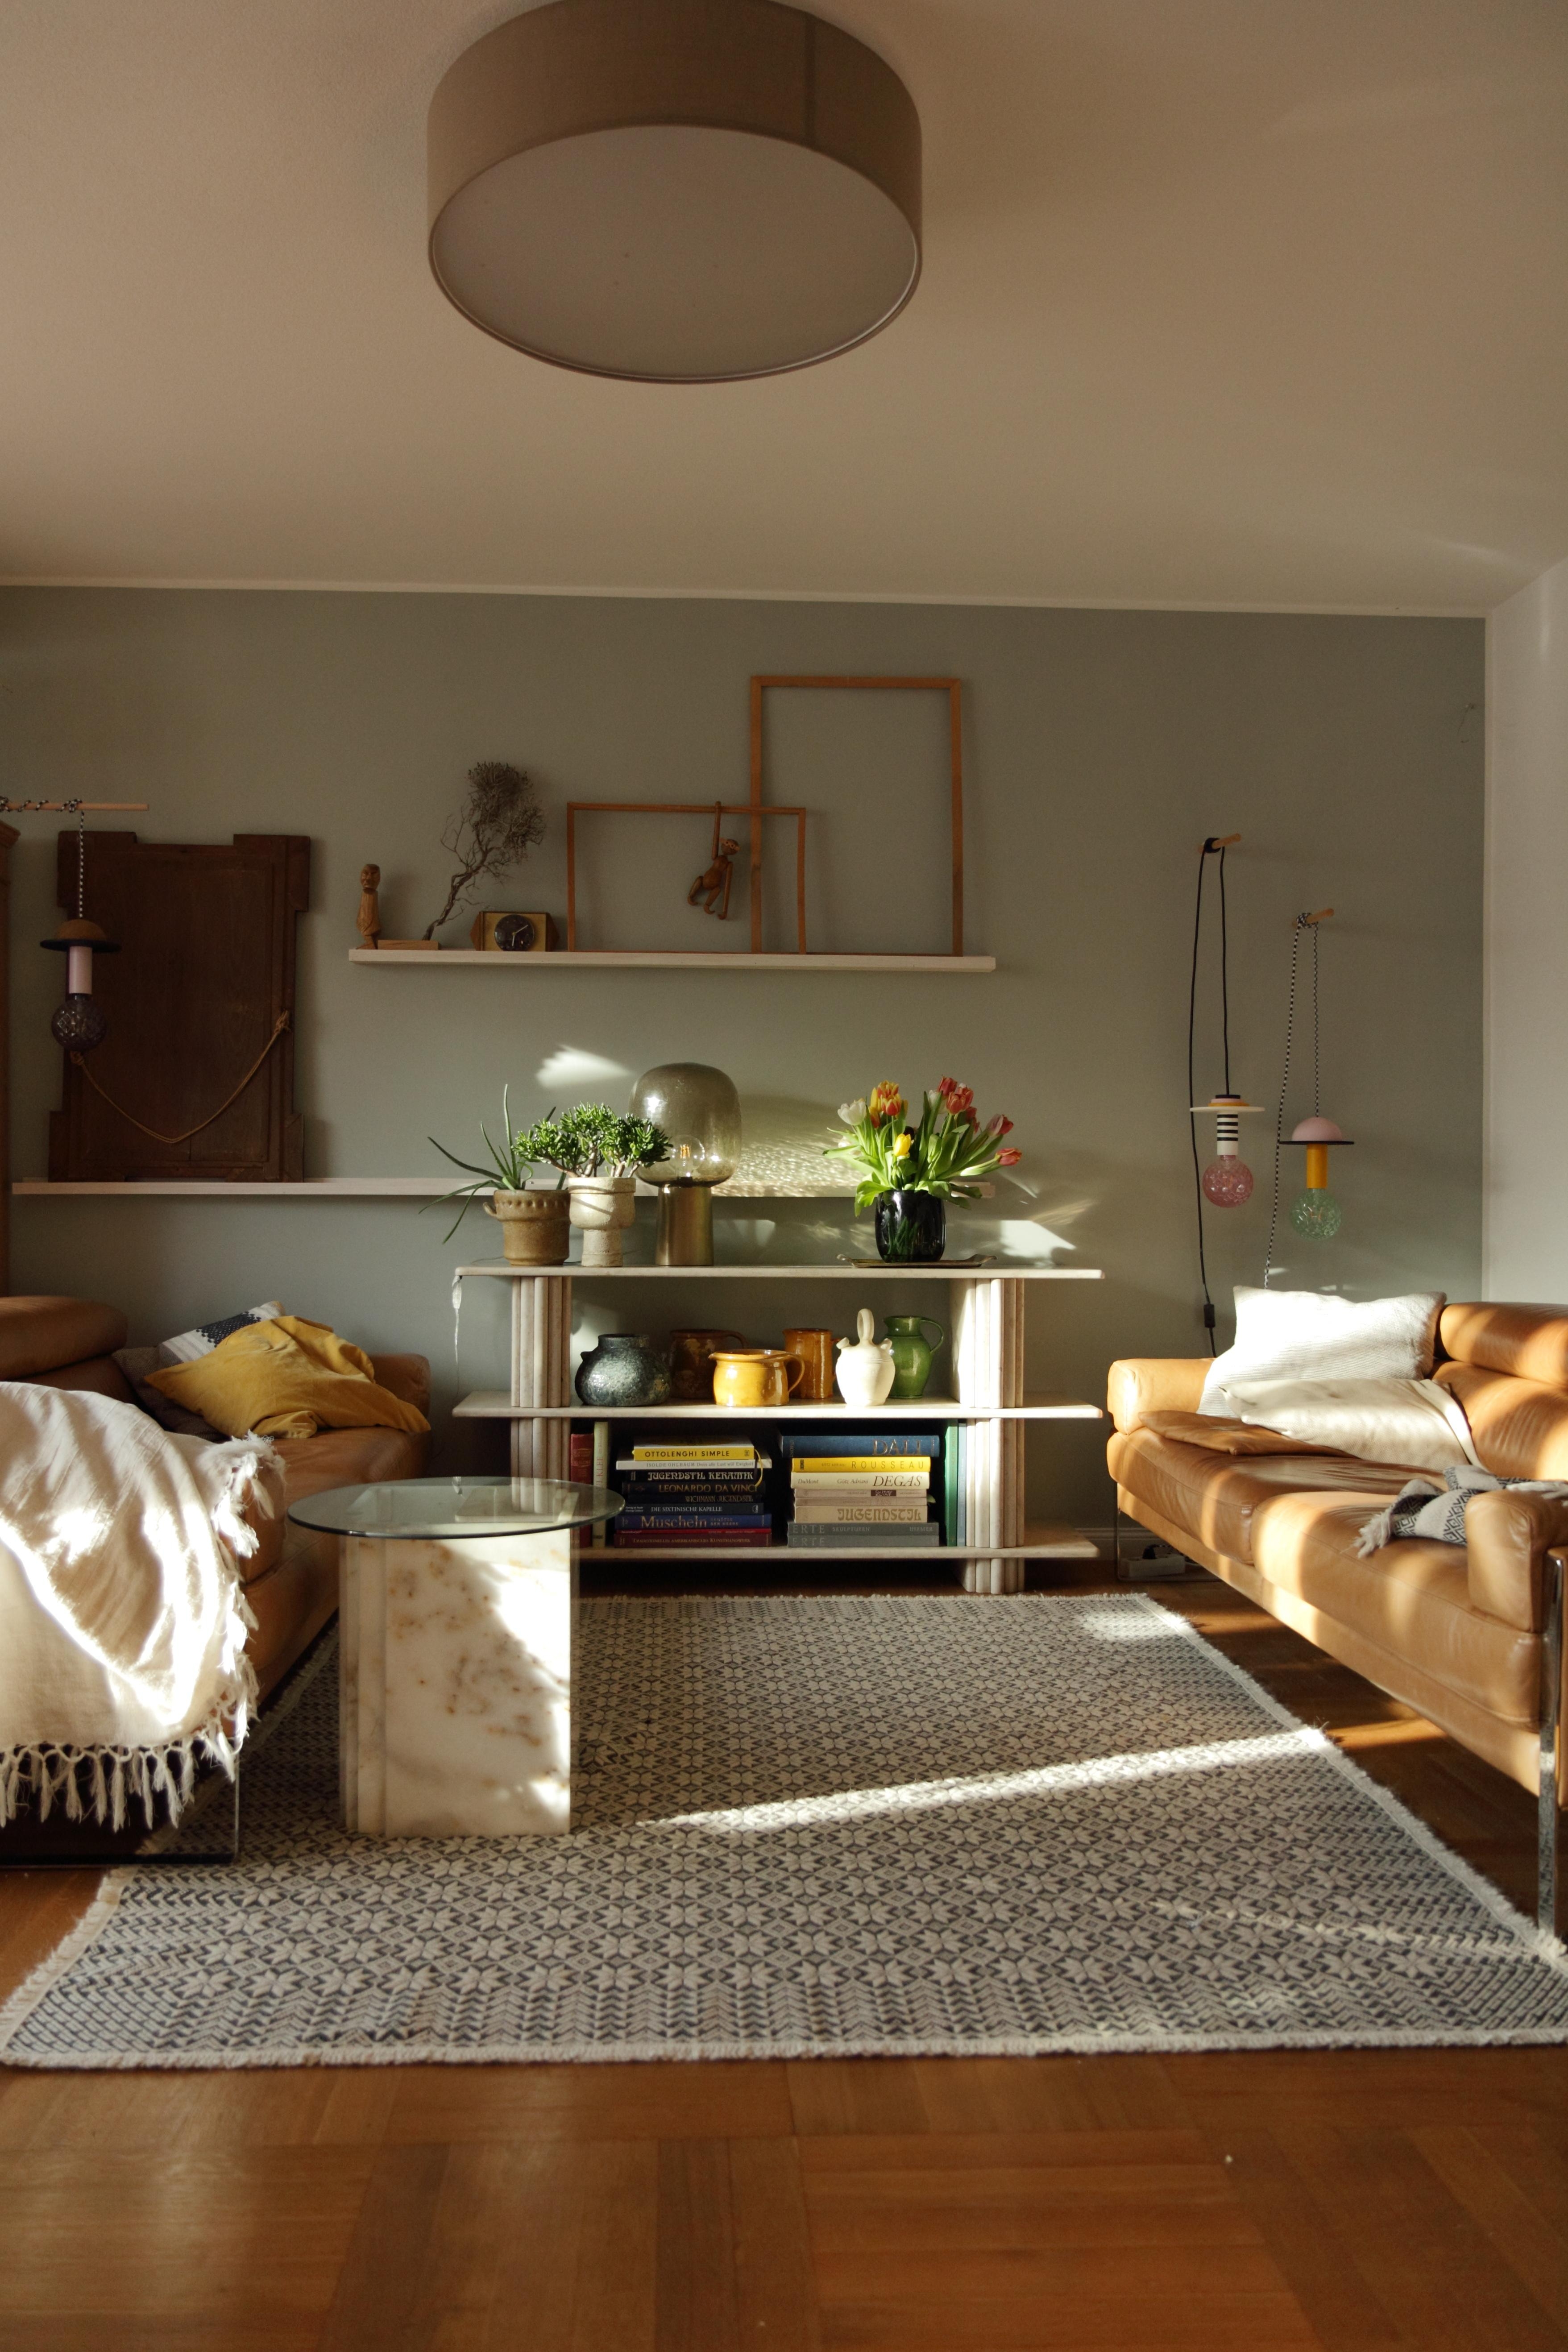 #Wohnzimmer #livingroom #wohnideen #marmorregal #midcentury
Still in love...🤩